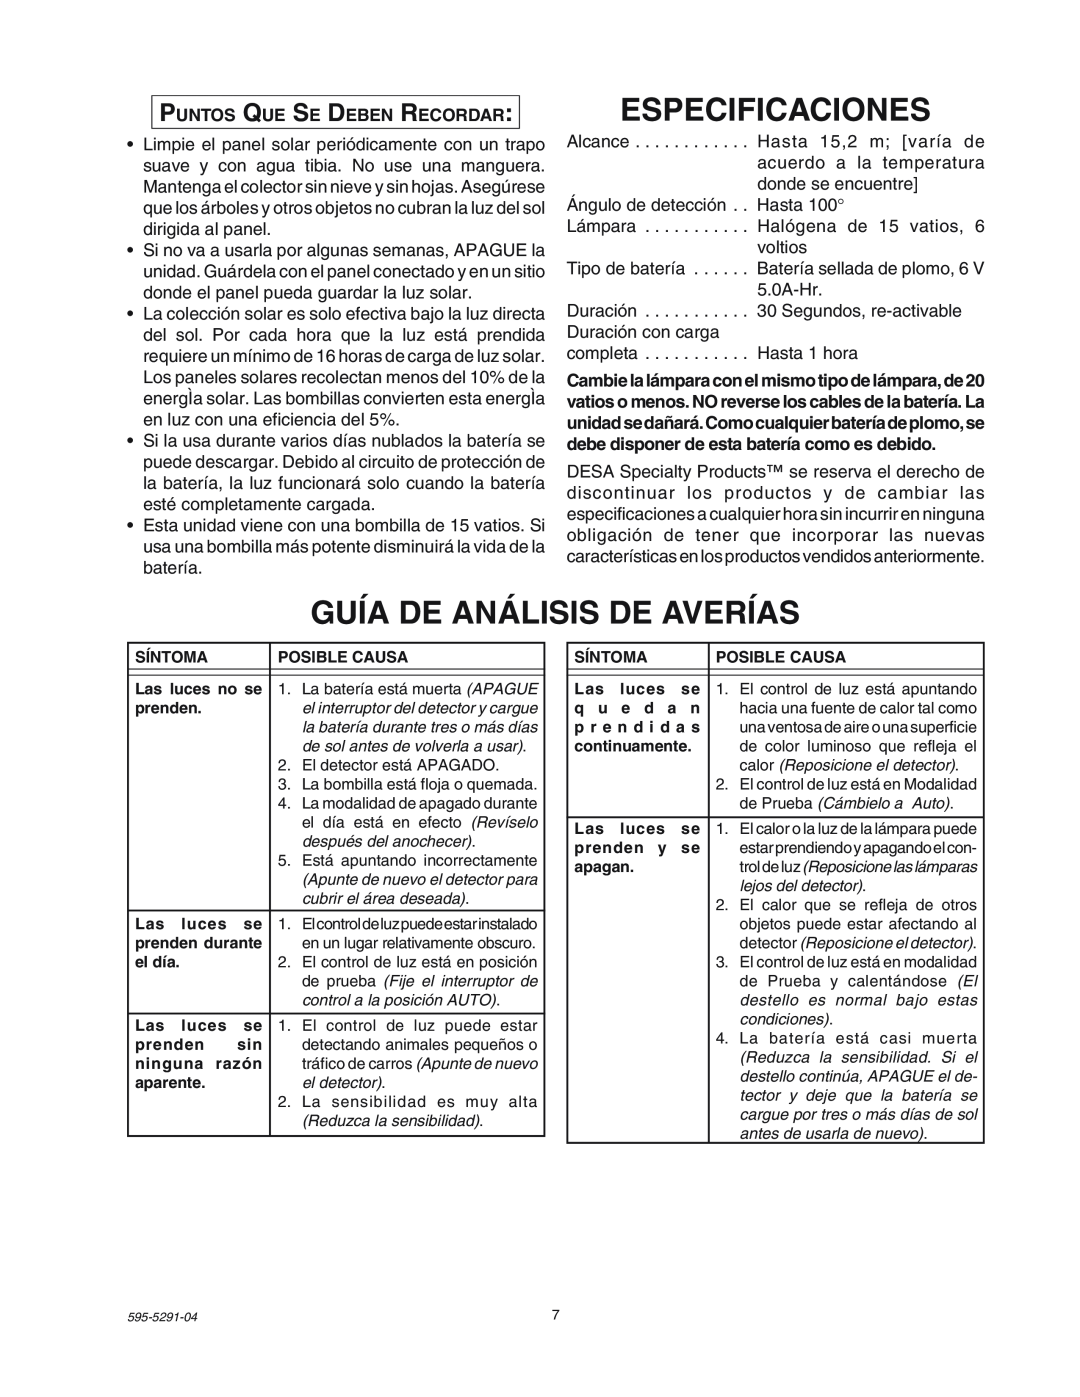 Heath Zenith SL-7001 manual Especificaciones, Guía De Análisis De Averías, Puntos Que Se Deben Recordar 